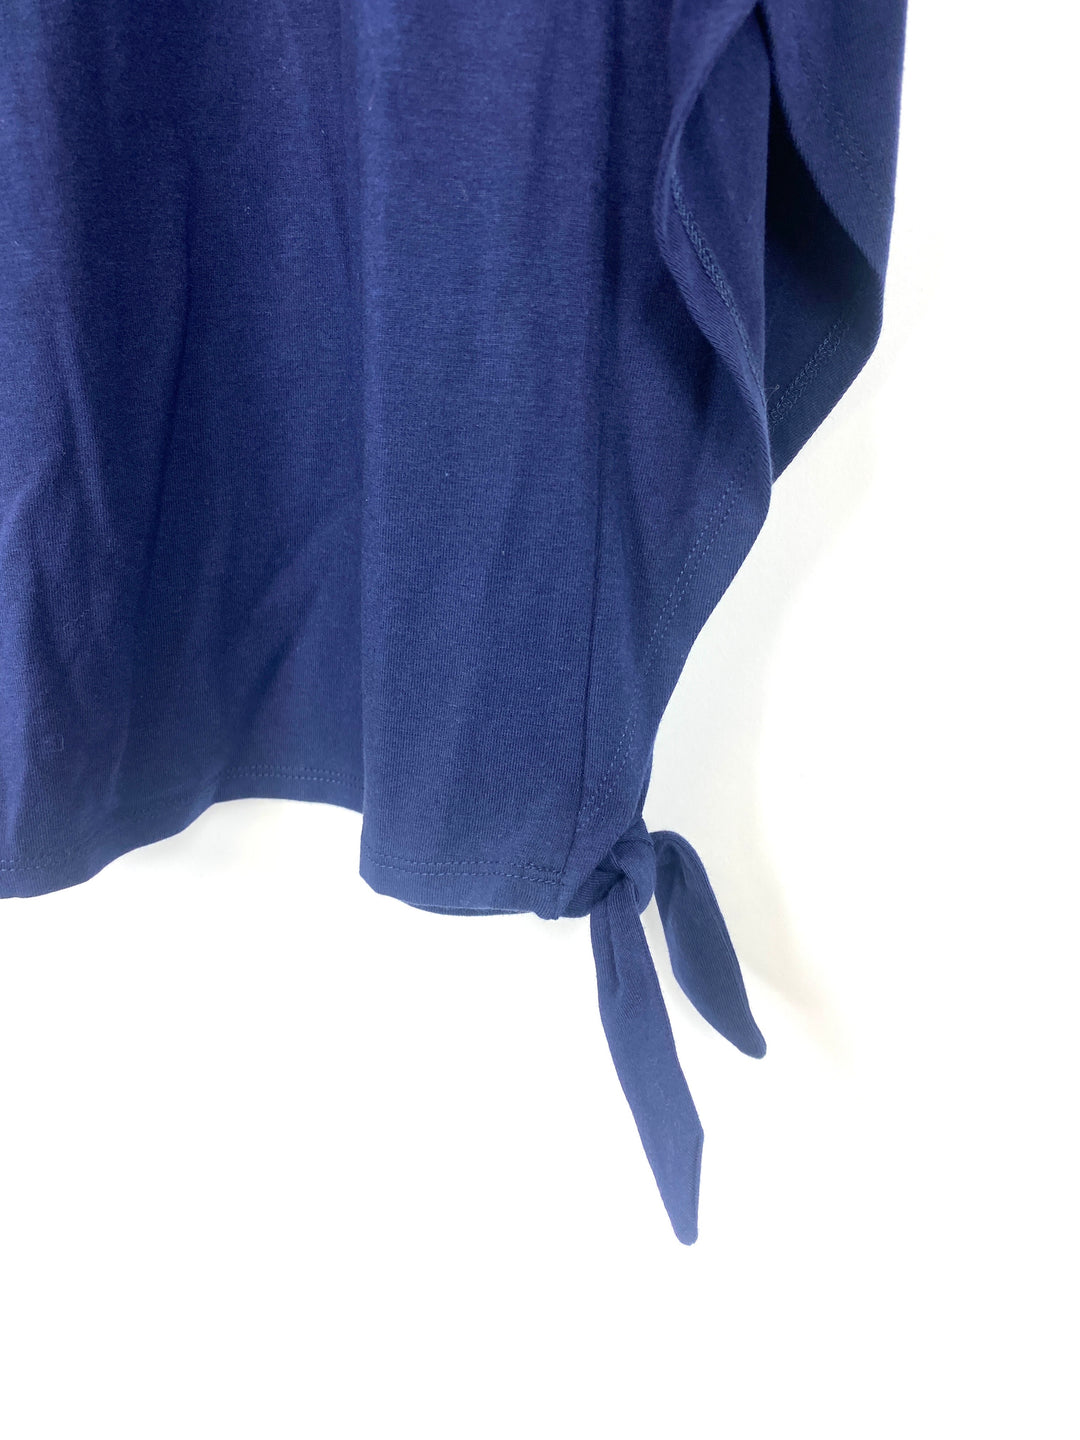 Navy Blue Winged T-Shirt - Small/Medium